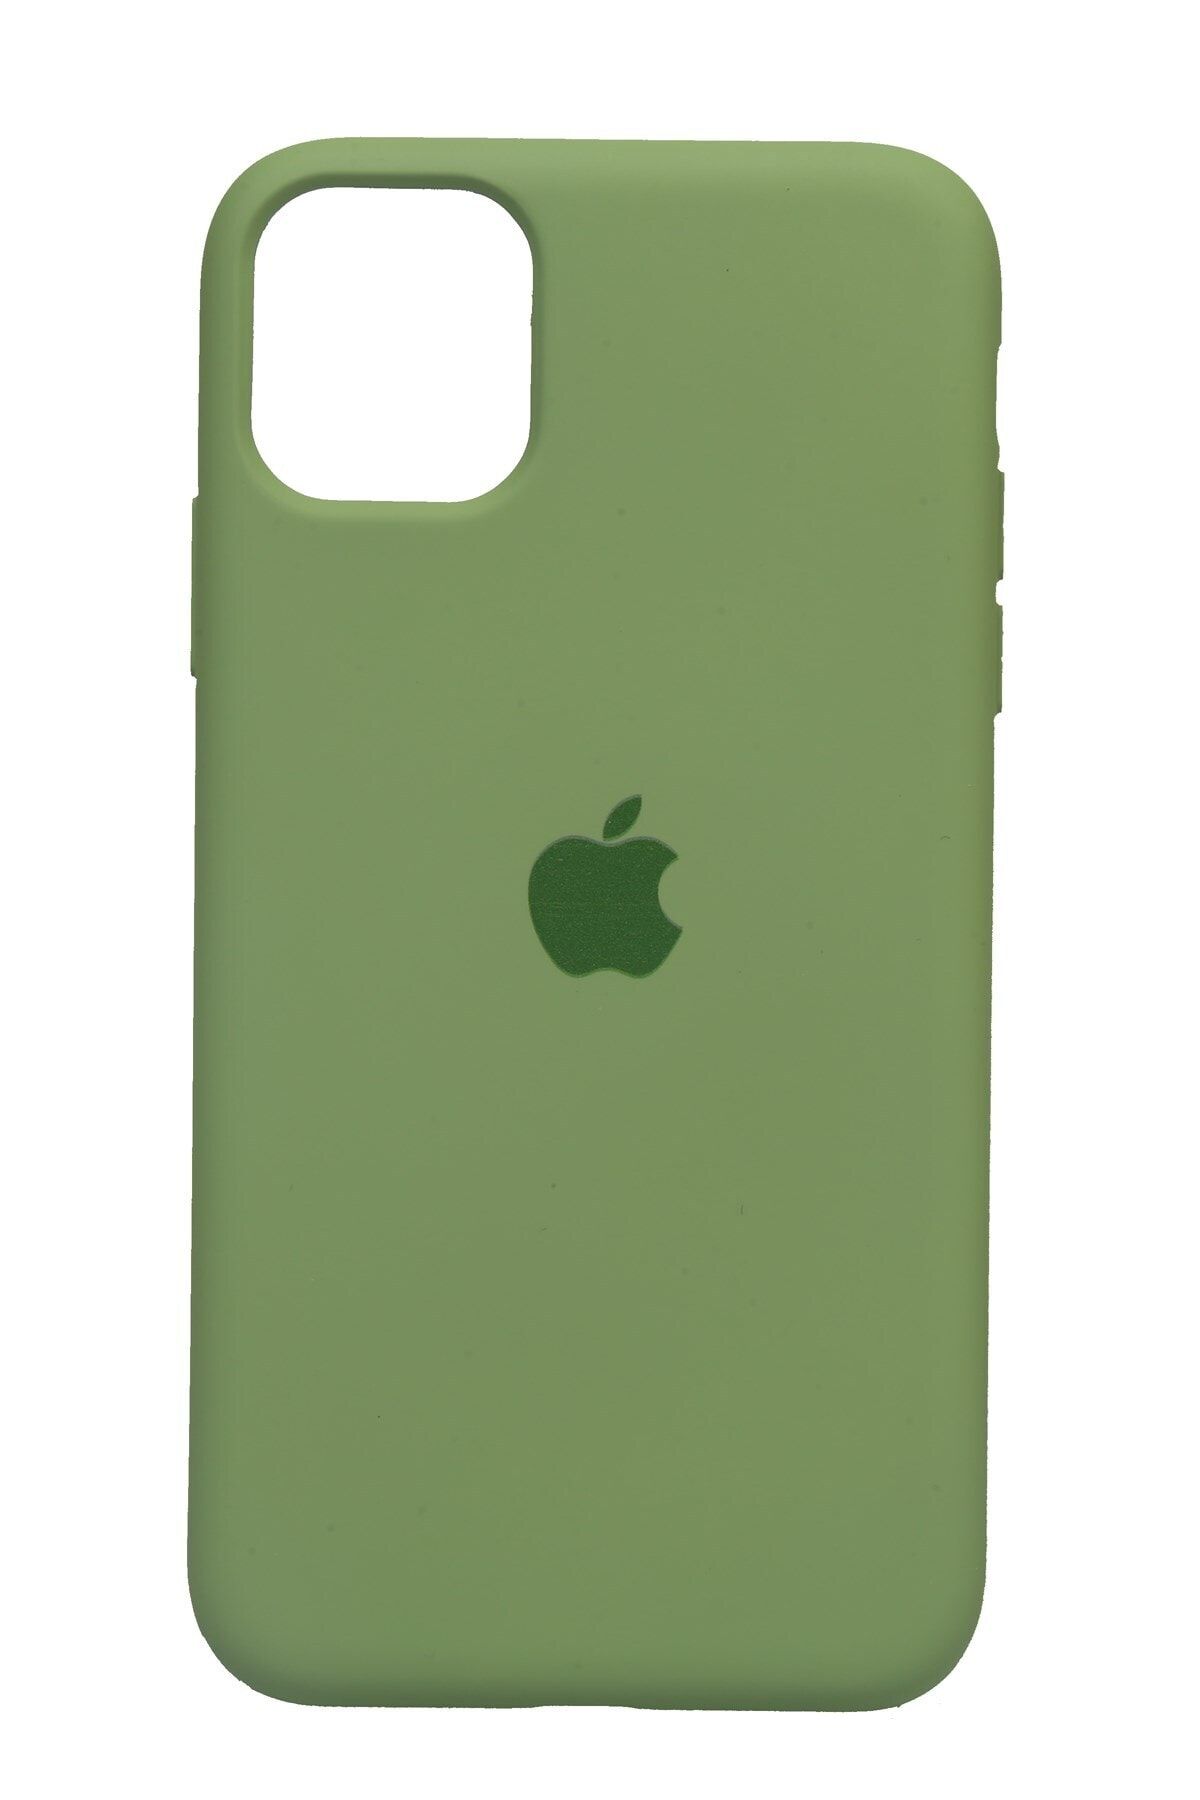 Merwish Apple Iphone 11 (6.1') Altı Kapalı Logolu Lansman Kılıf Kapak Yeşil